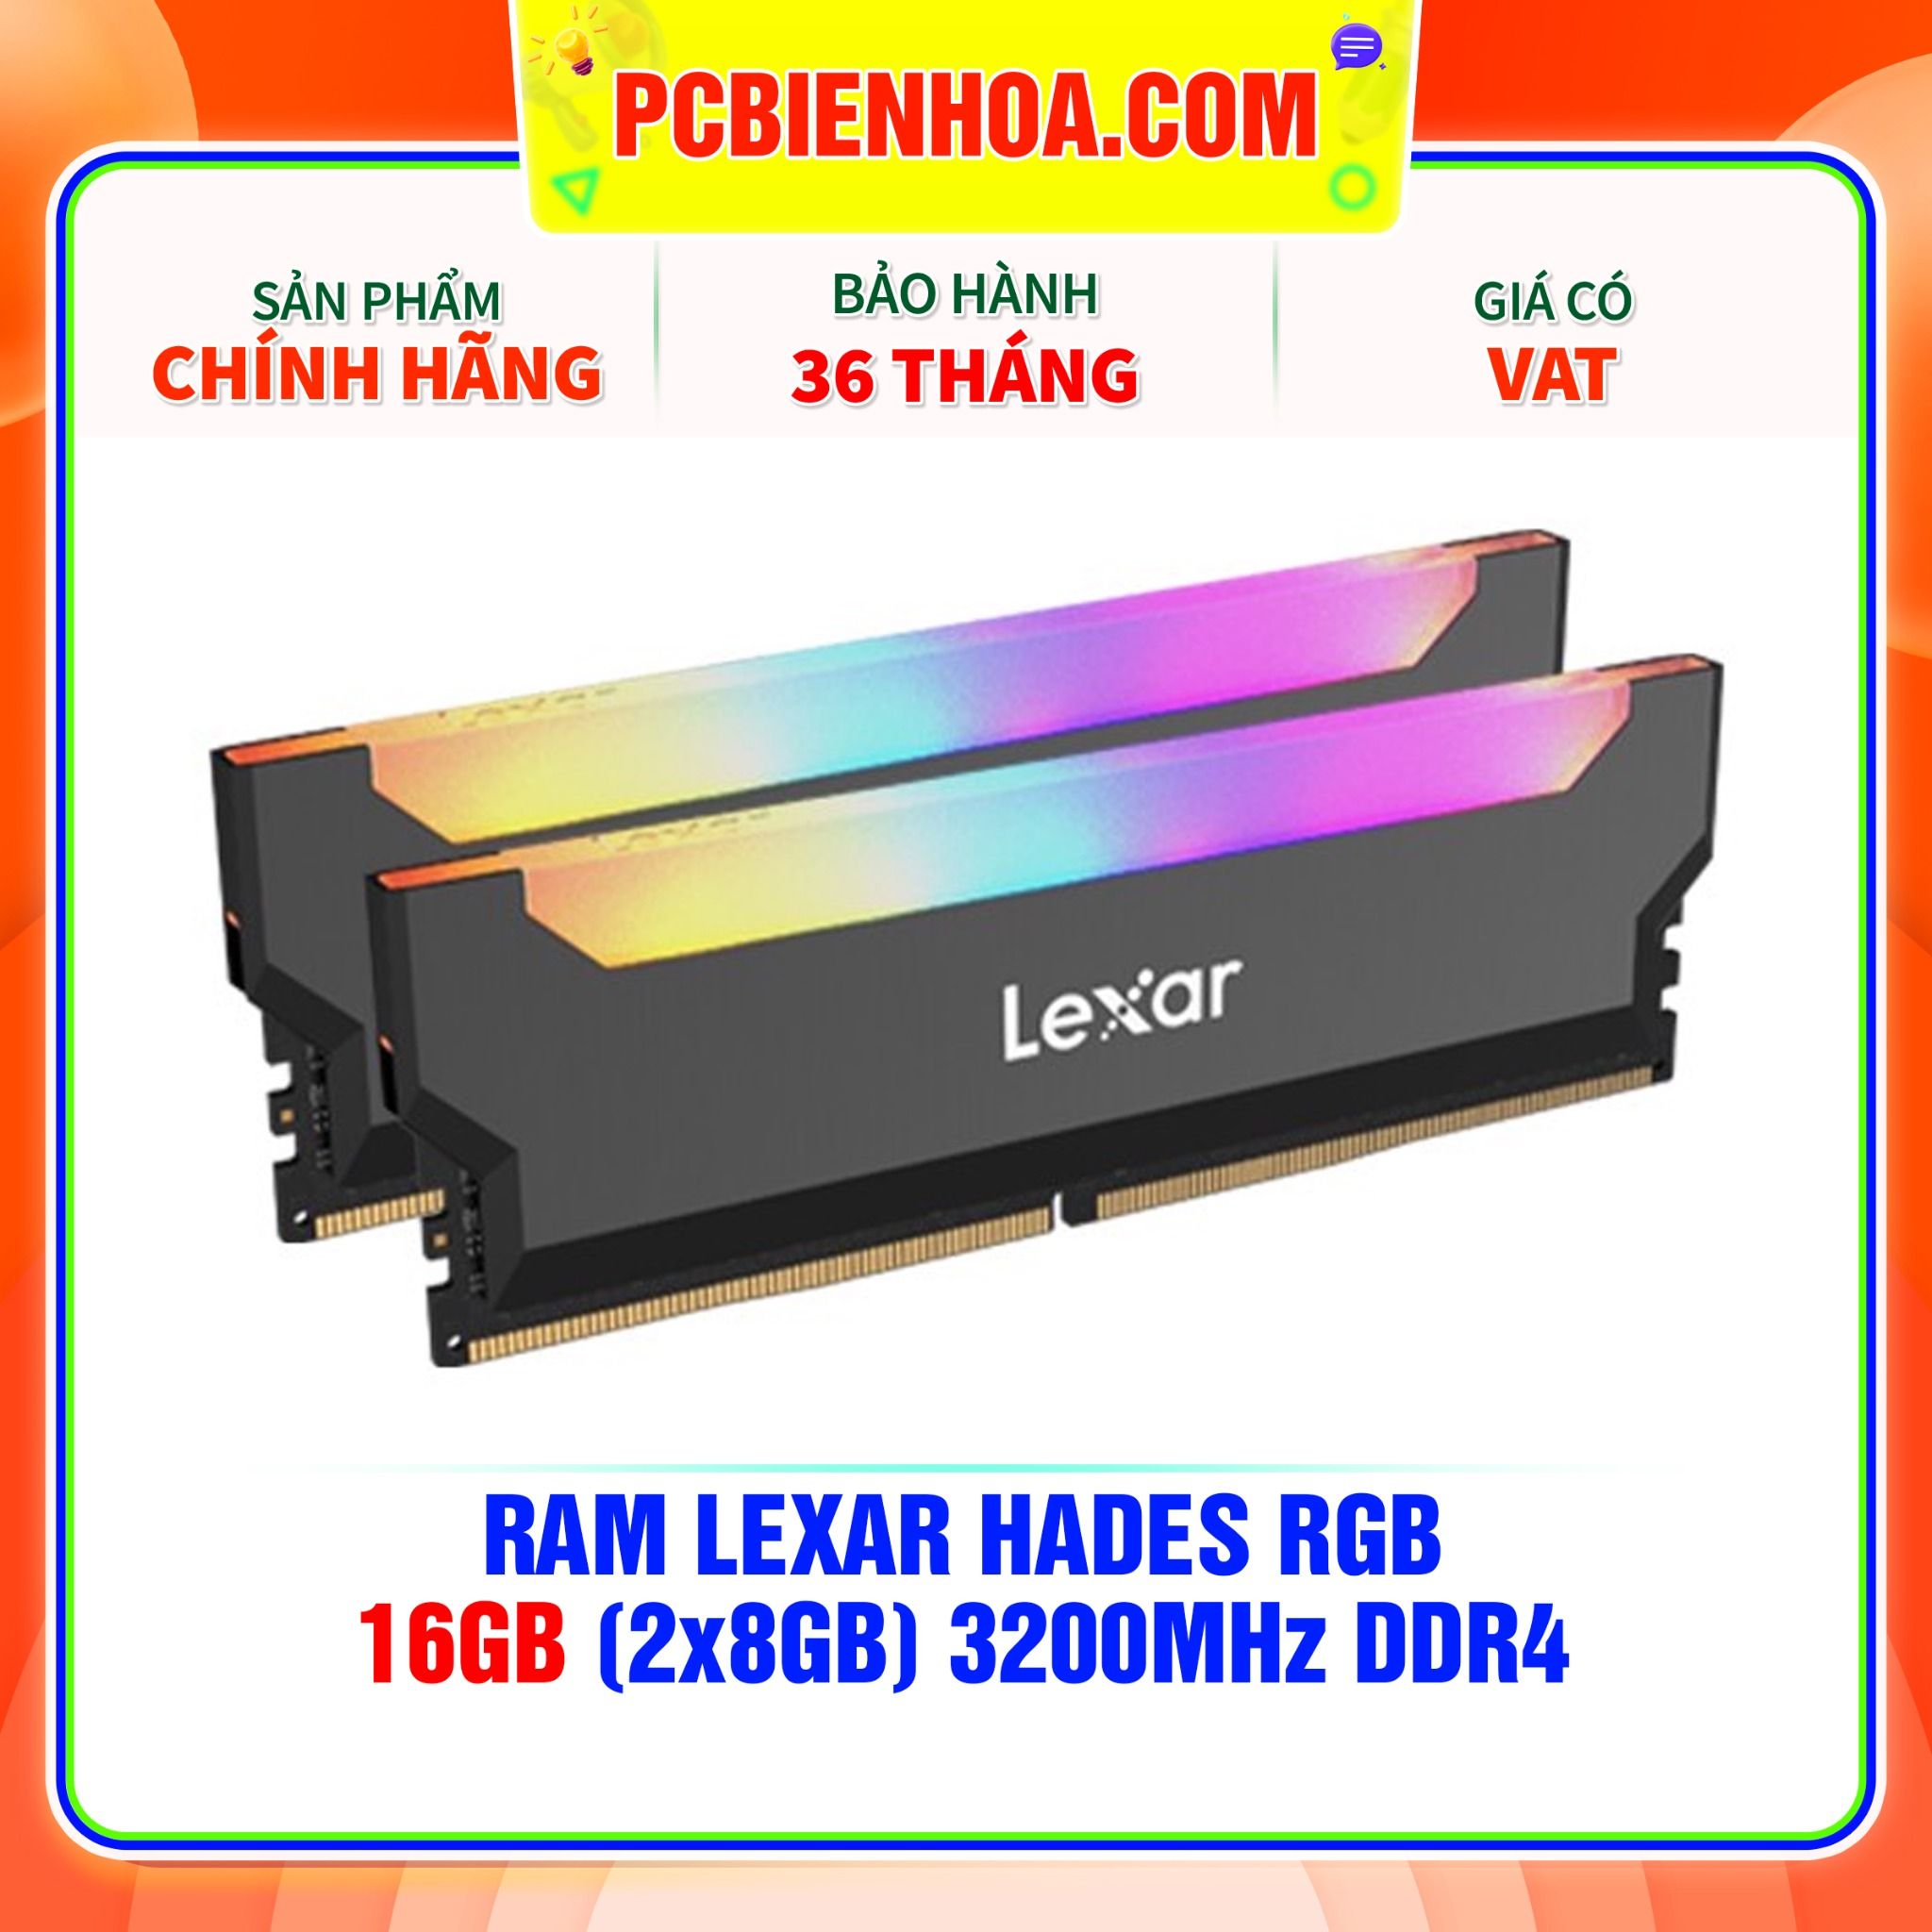  RAM LEXAR HADES RGB 16GB (2x8GB) 3200MHz DDR4 